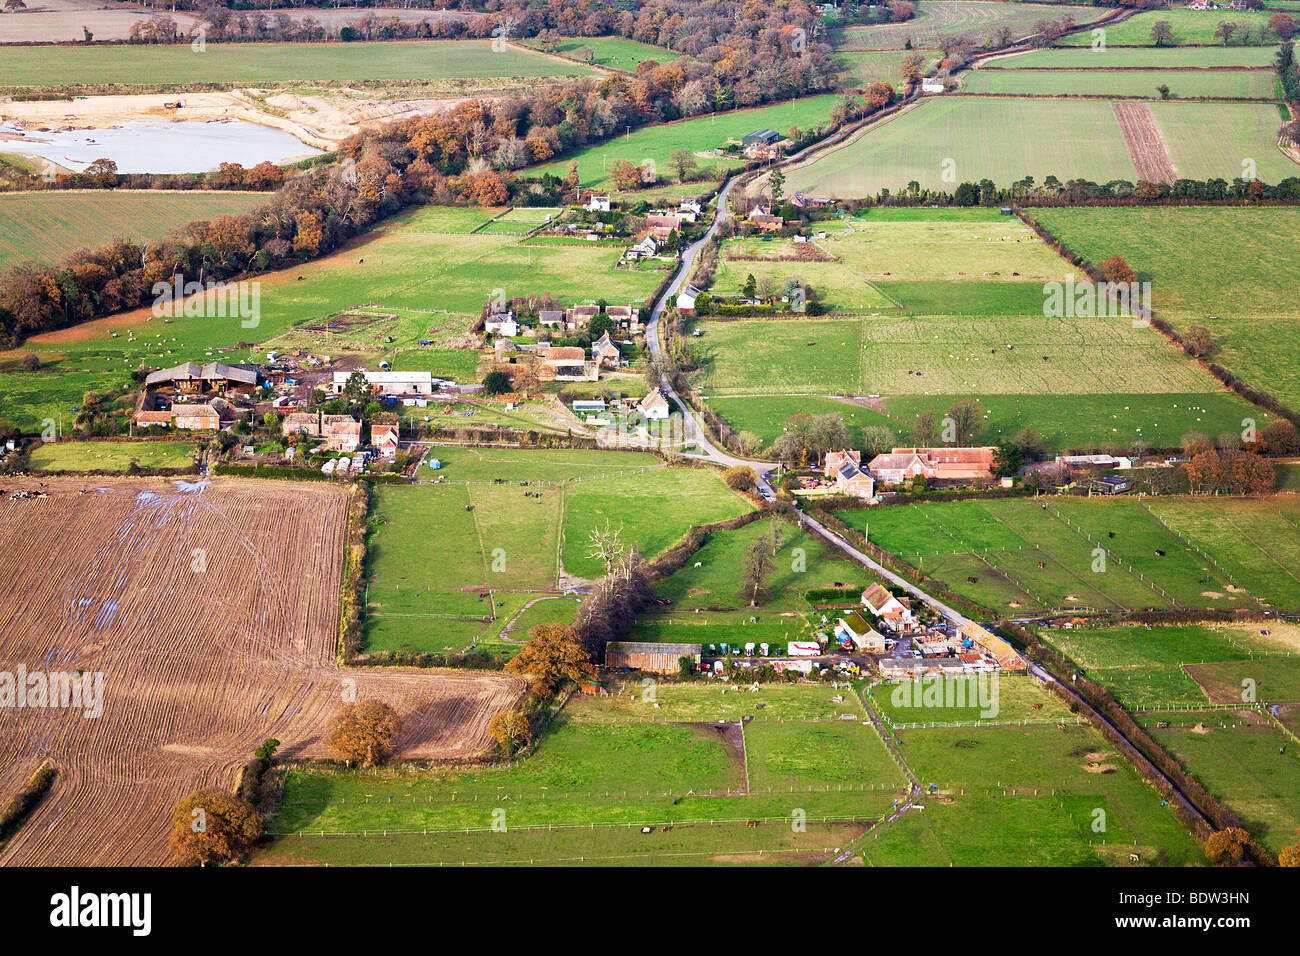 Vue aérienne de fermes, les terres agricoles et les champs. Frontière du Hampshire et du Dorset. UK. Couleurs d'automne. Banque D'Images